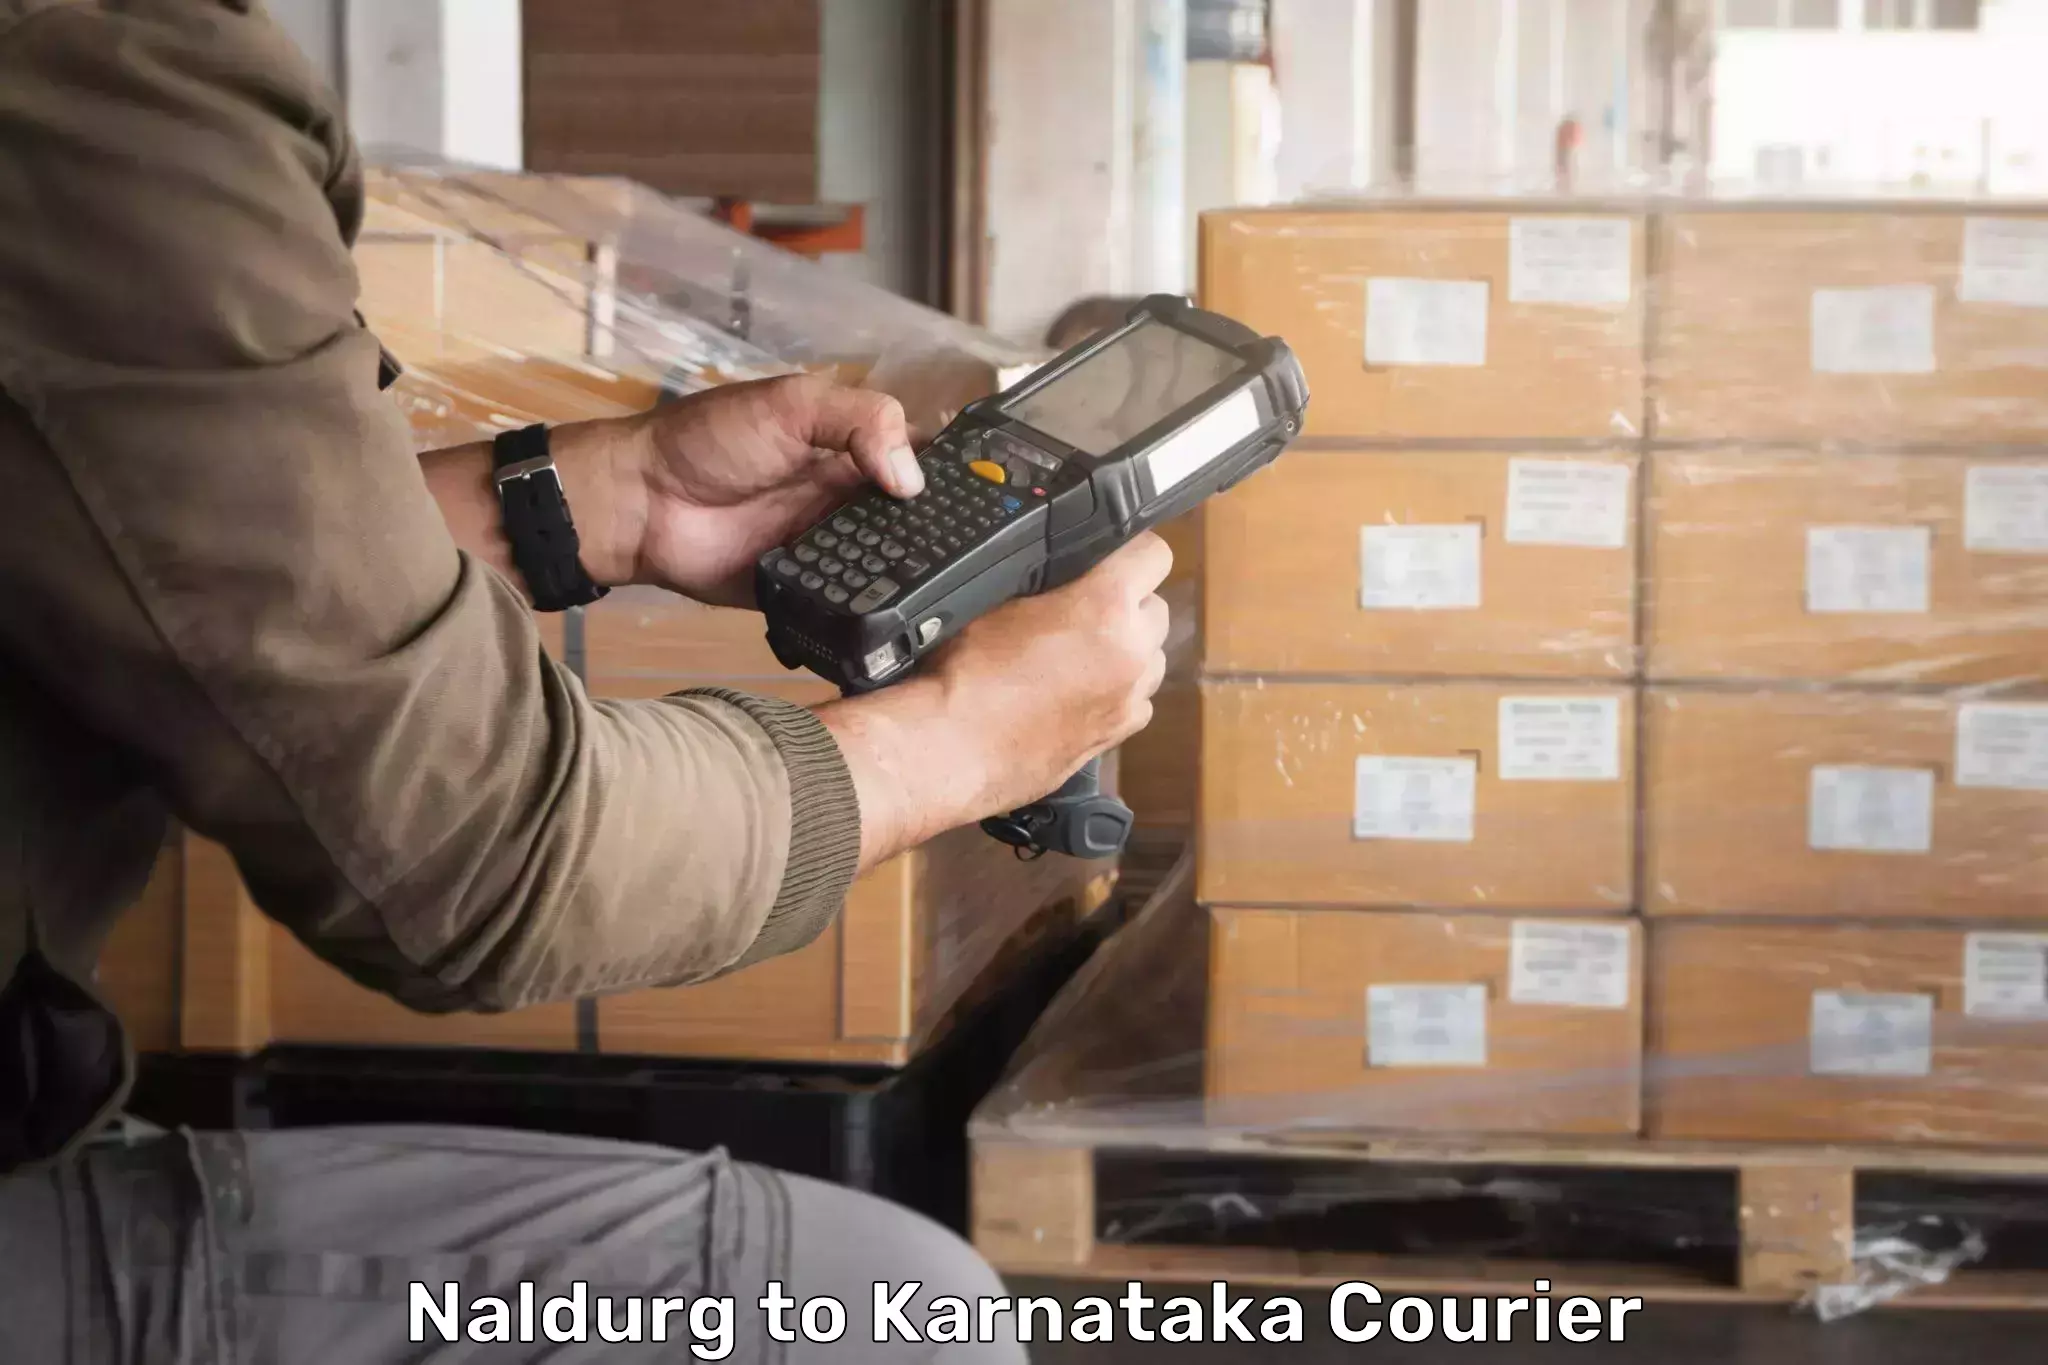 24-hour courier services Naldurg to Pavagada